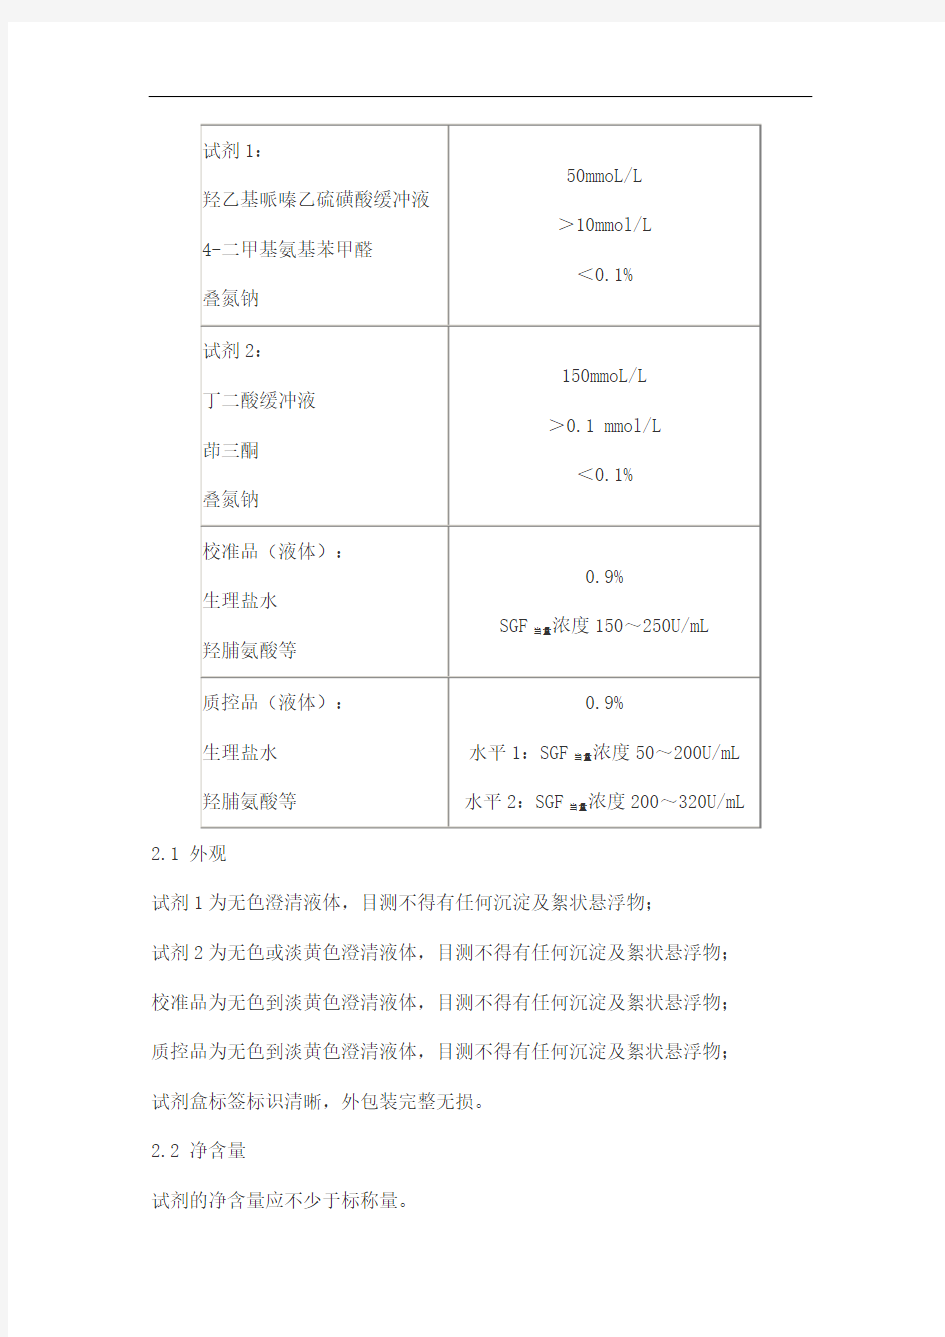 特异性生长因子测定试剂盒(化学法)产品技术要求jiuqiang